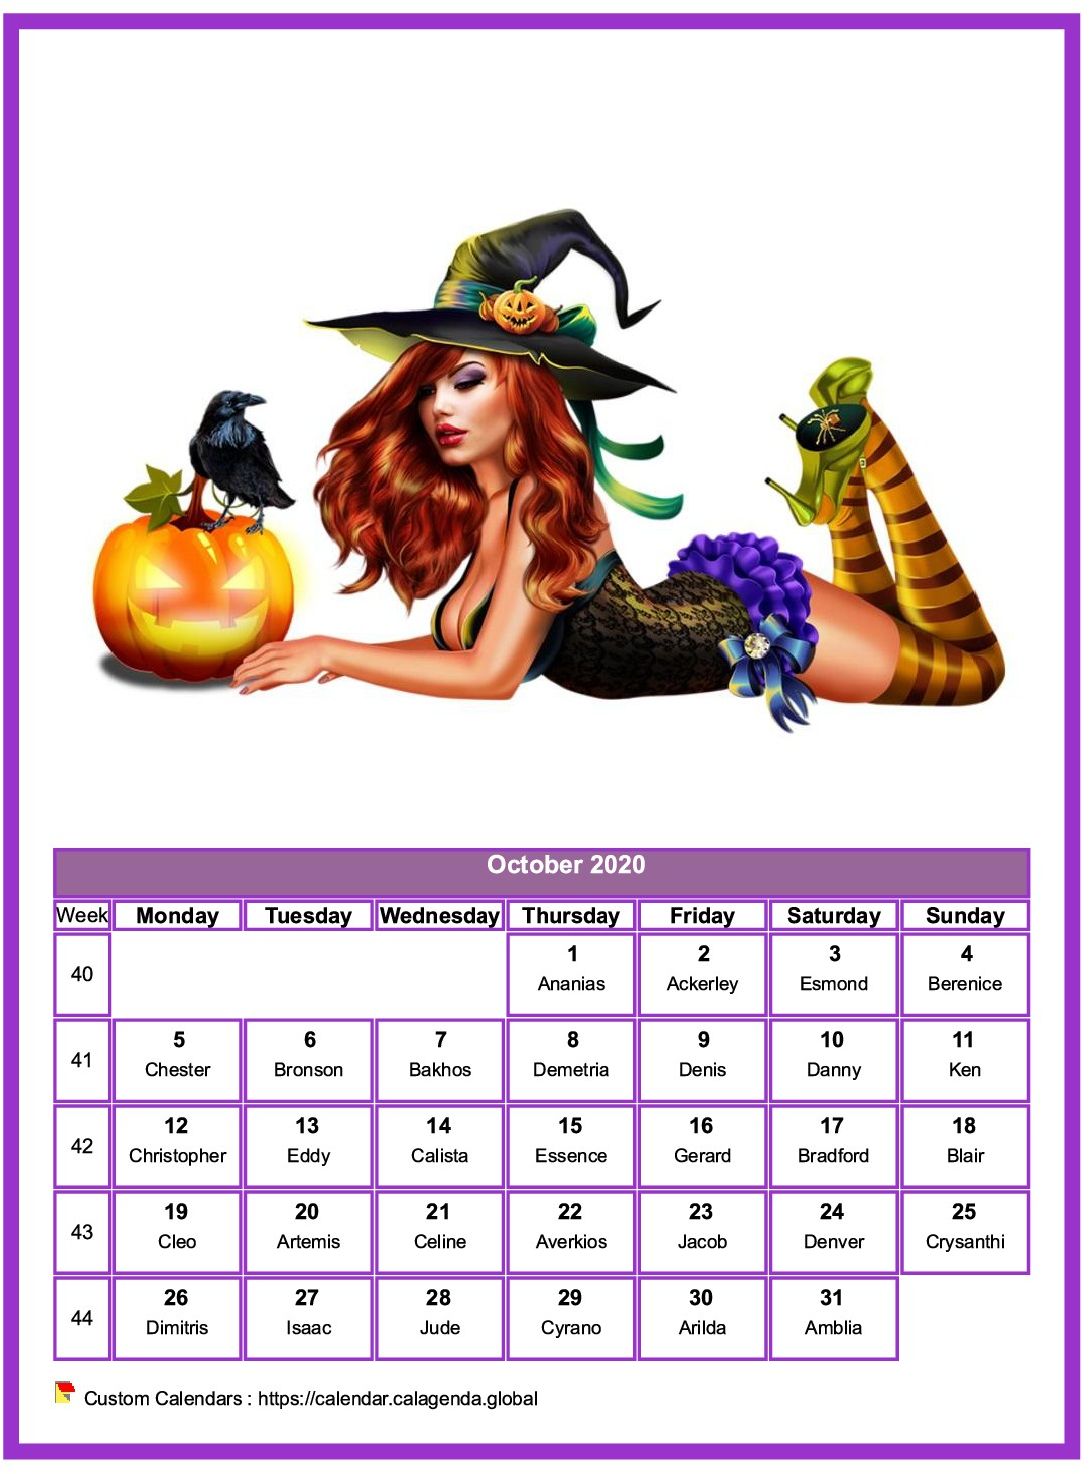 Calendar October 2020 women